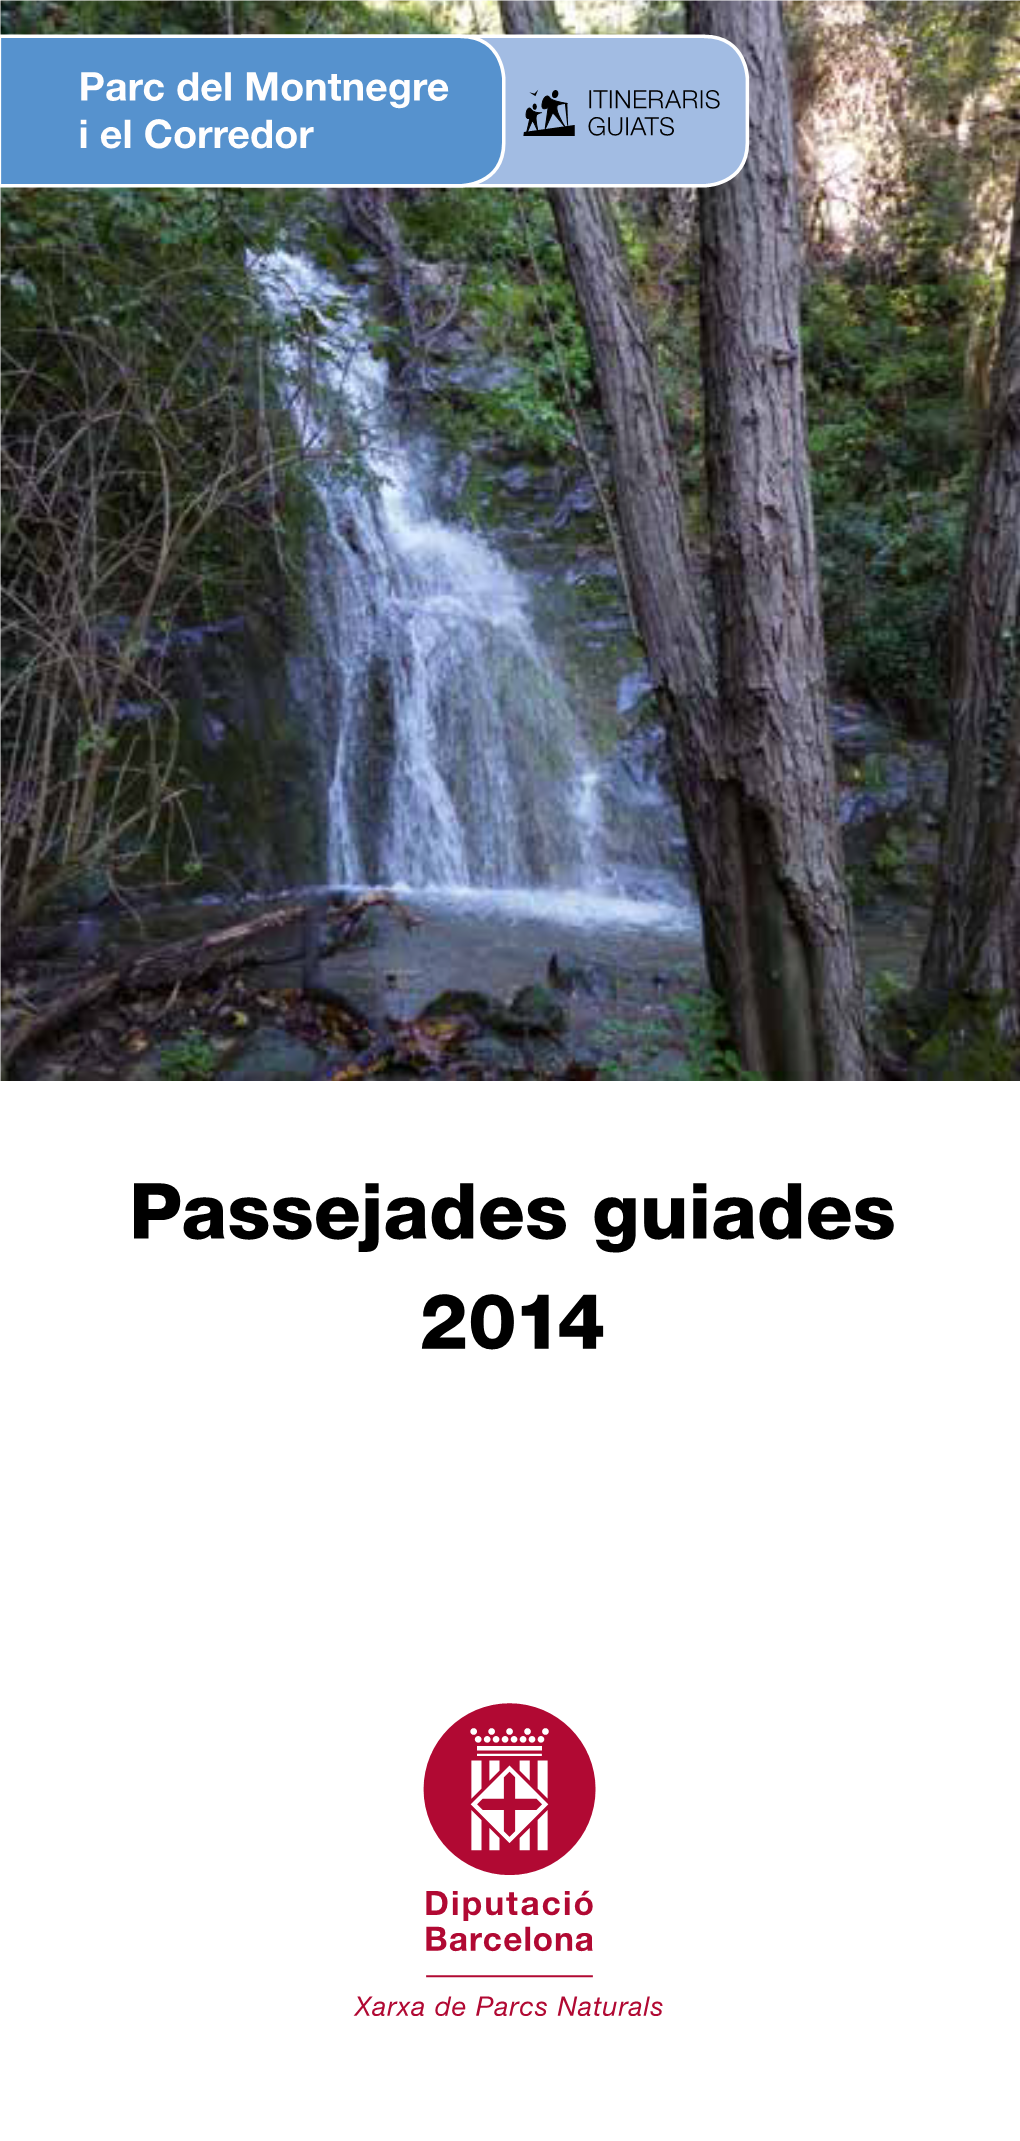 Passejades Guiades 2014